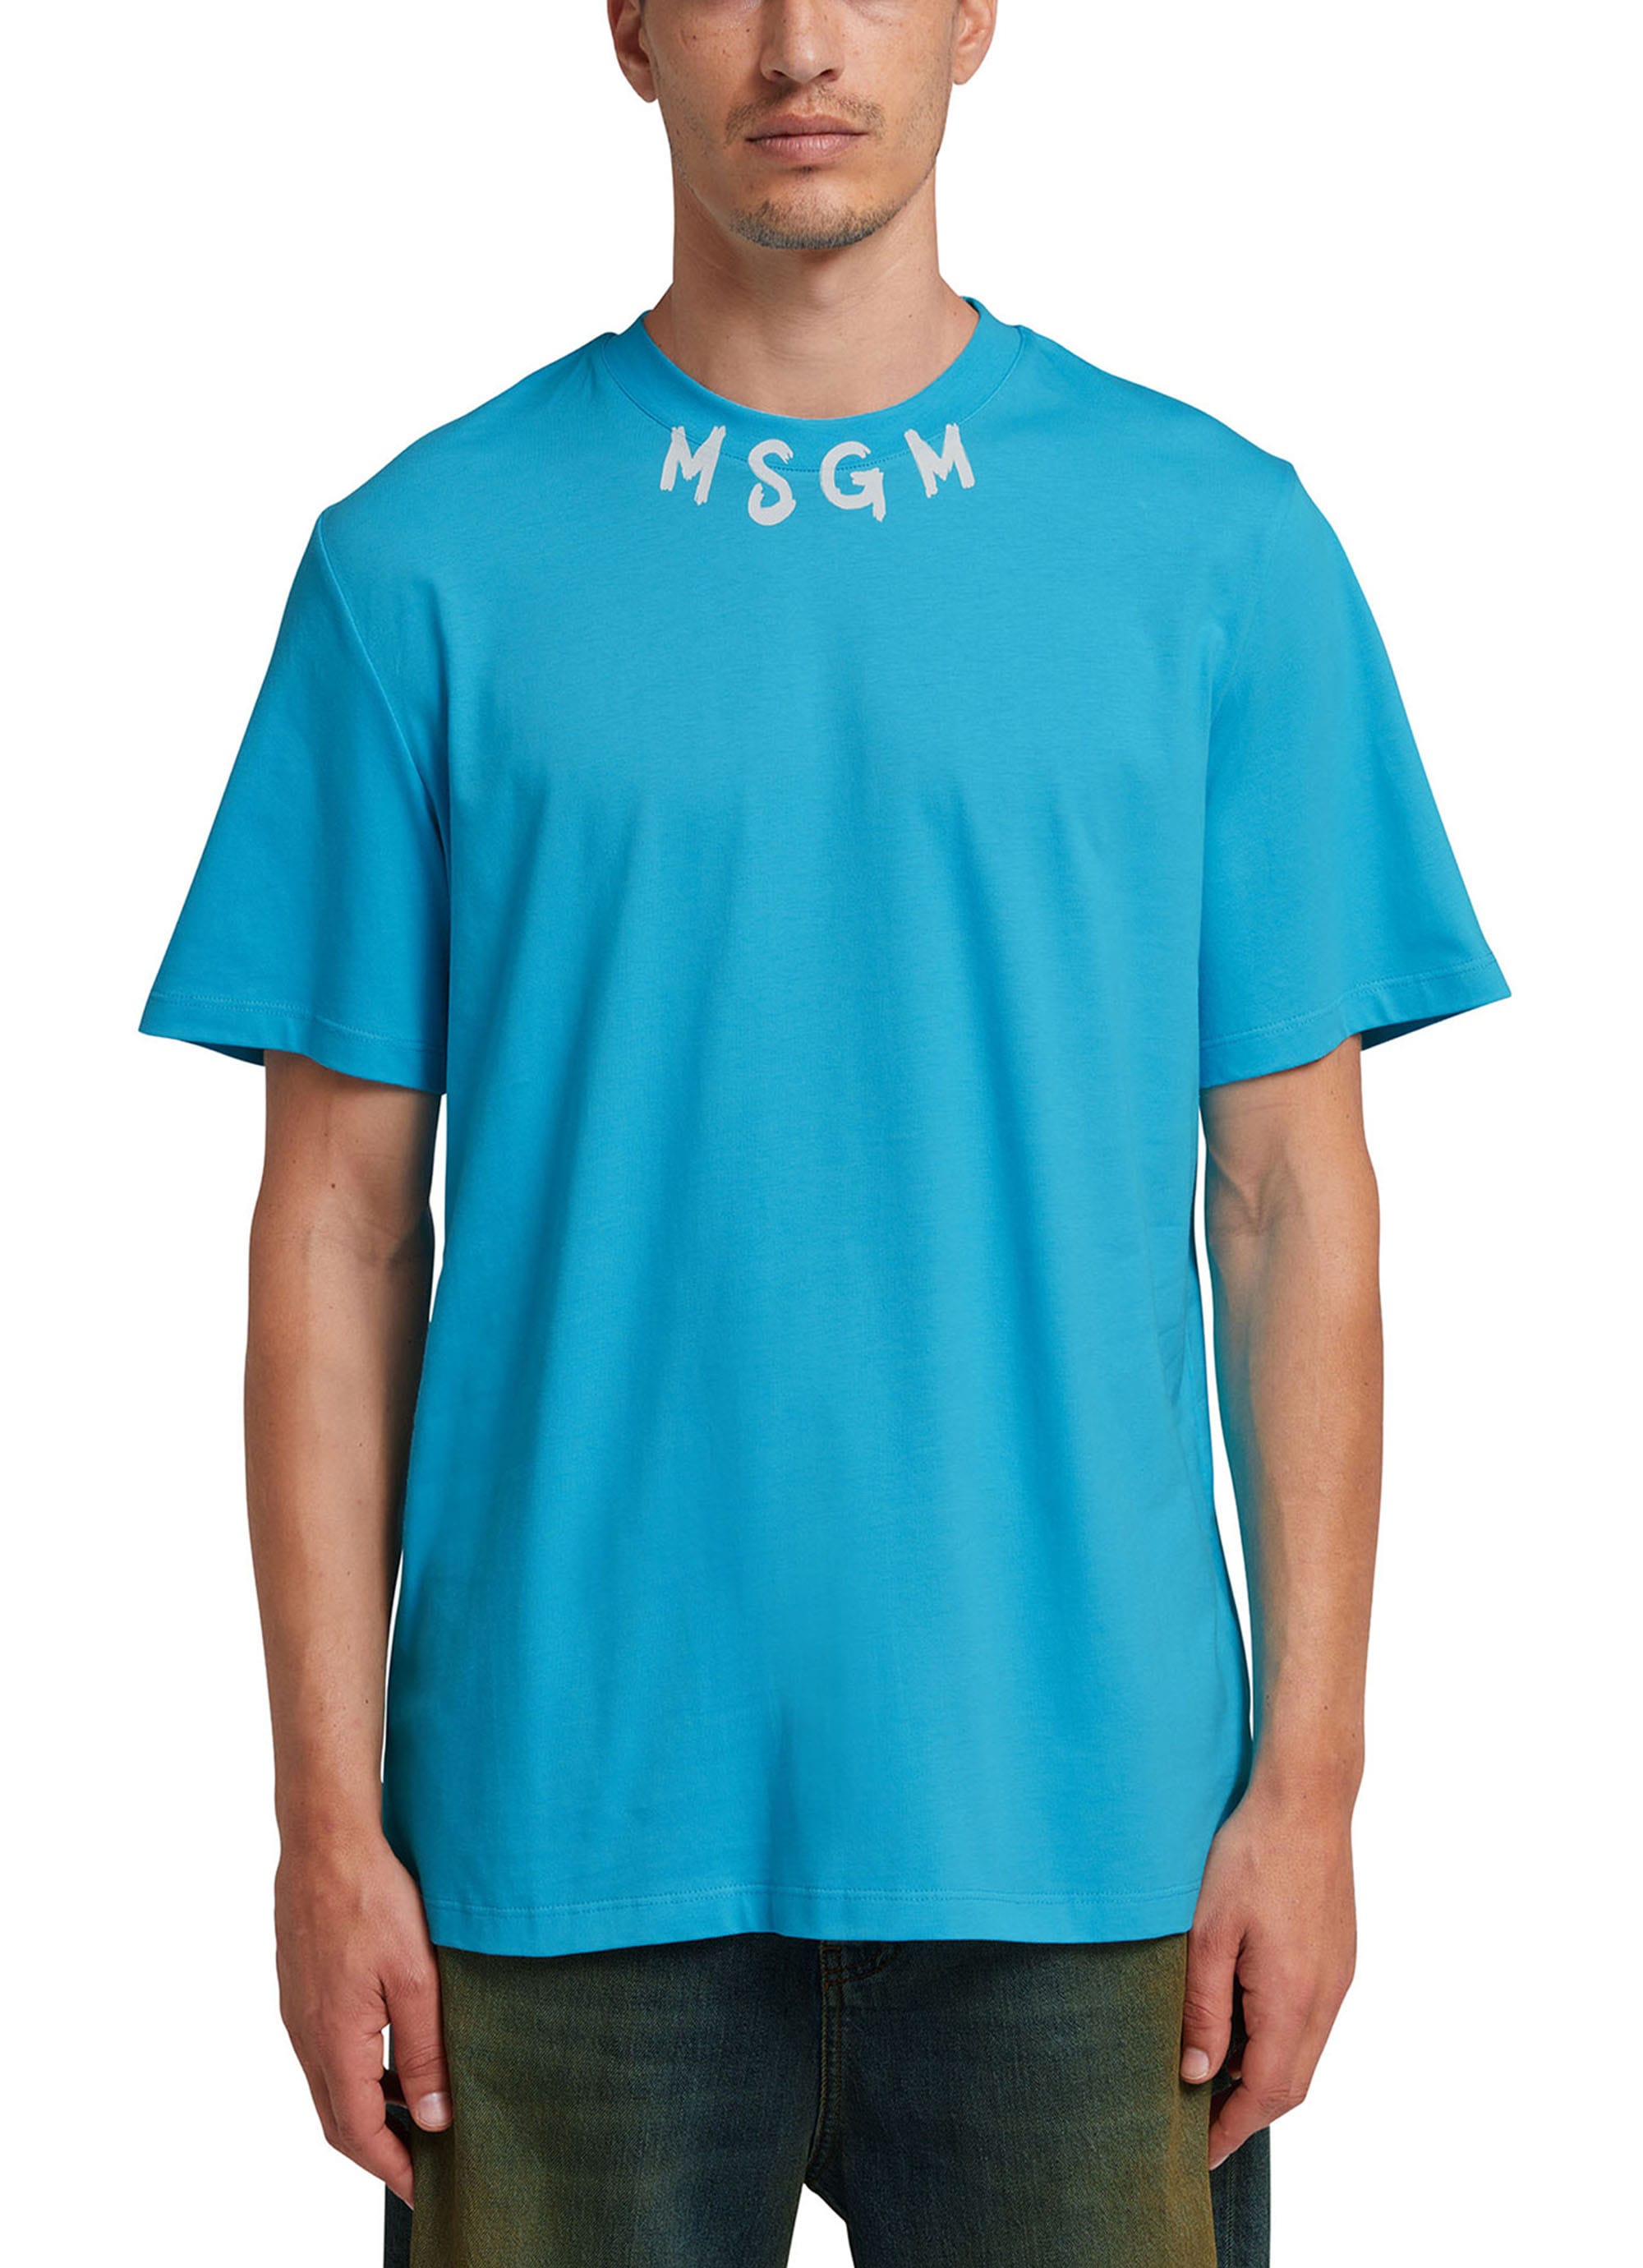 MSGM NEWブラッシュストロークロゴTシャツ 詳細画像 ライトブルー 2